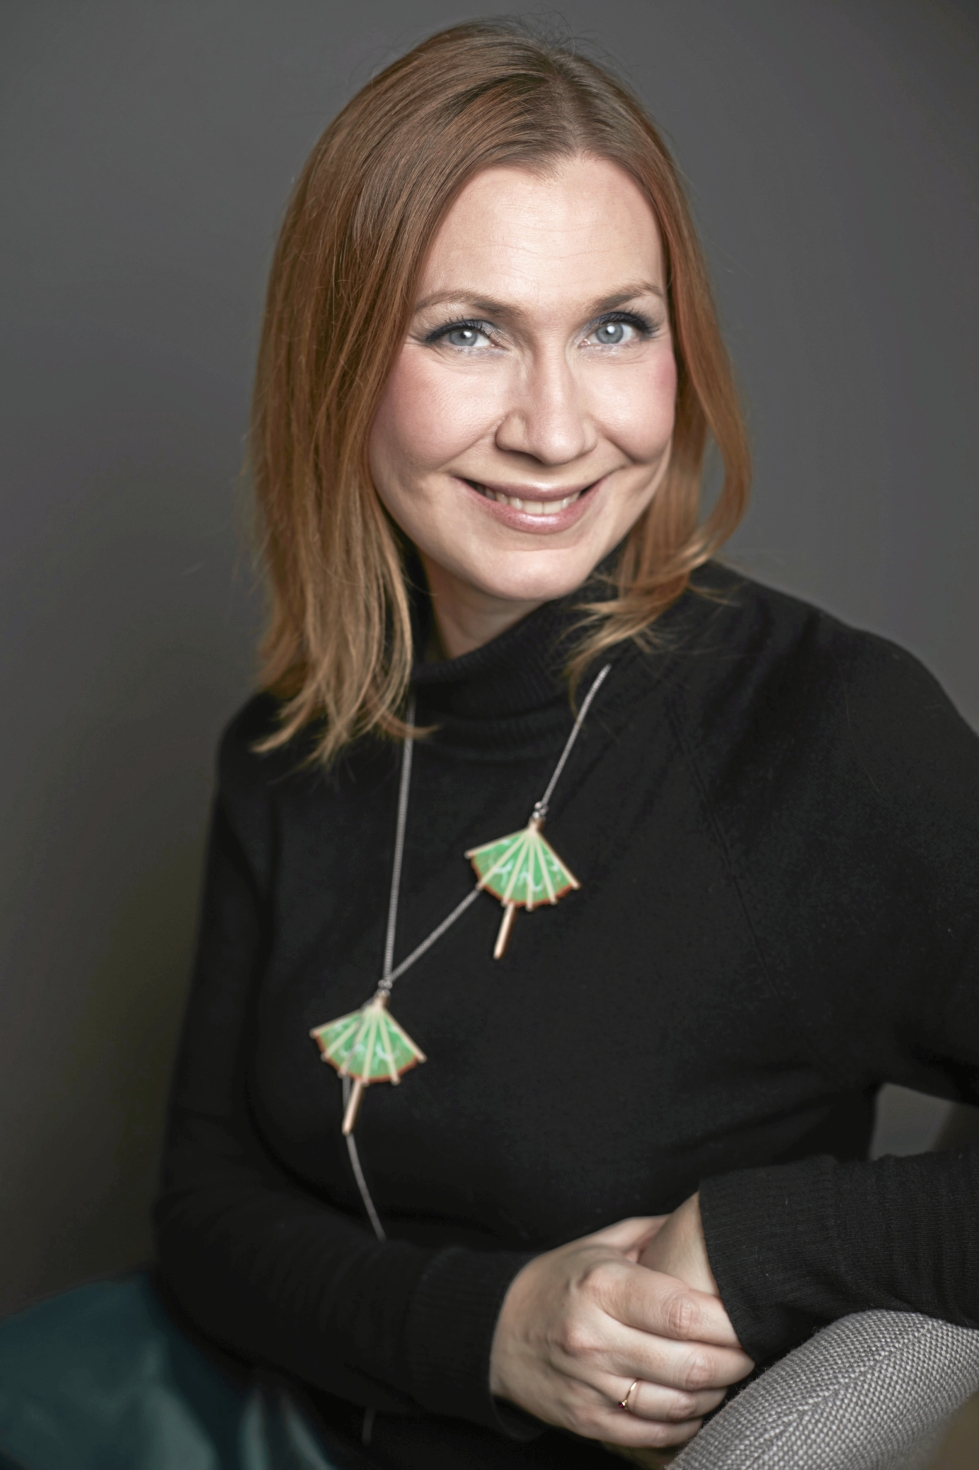 Joensuusta kotoisin oleva Karoliina Timonen on kirjoittanut biofiktion "Lainasta", Kalle Päätalon ensimmäisestä vaimosta.